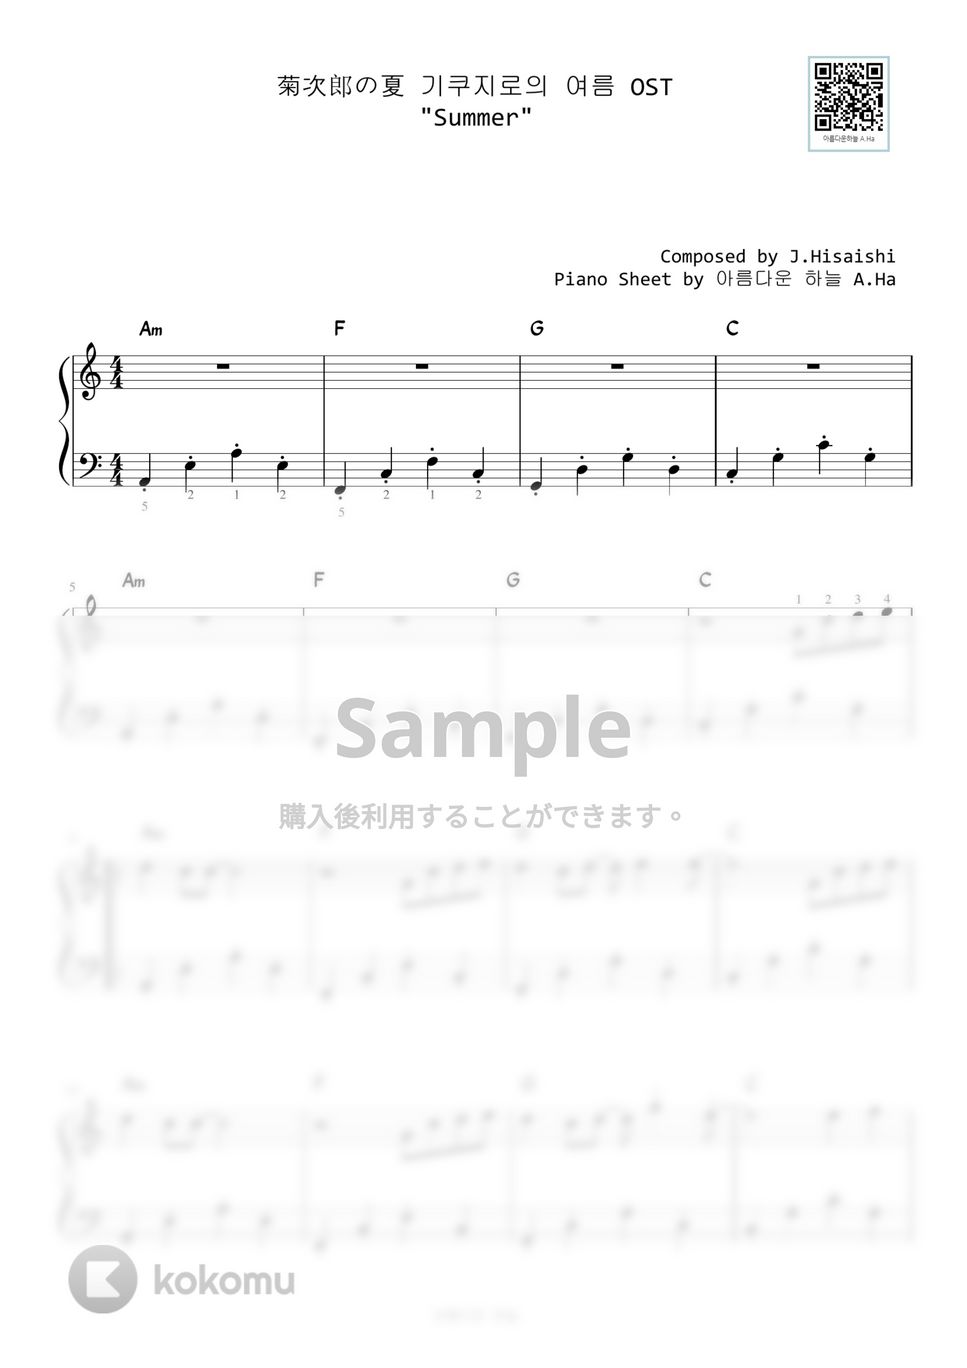 菊次郎の夏 - Summer (Level 1- Very Easy) by A.Ha